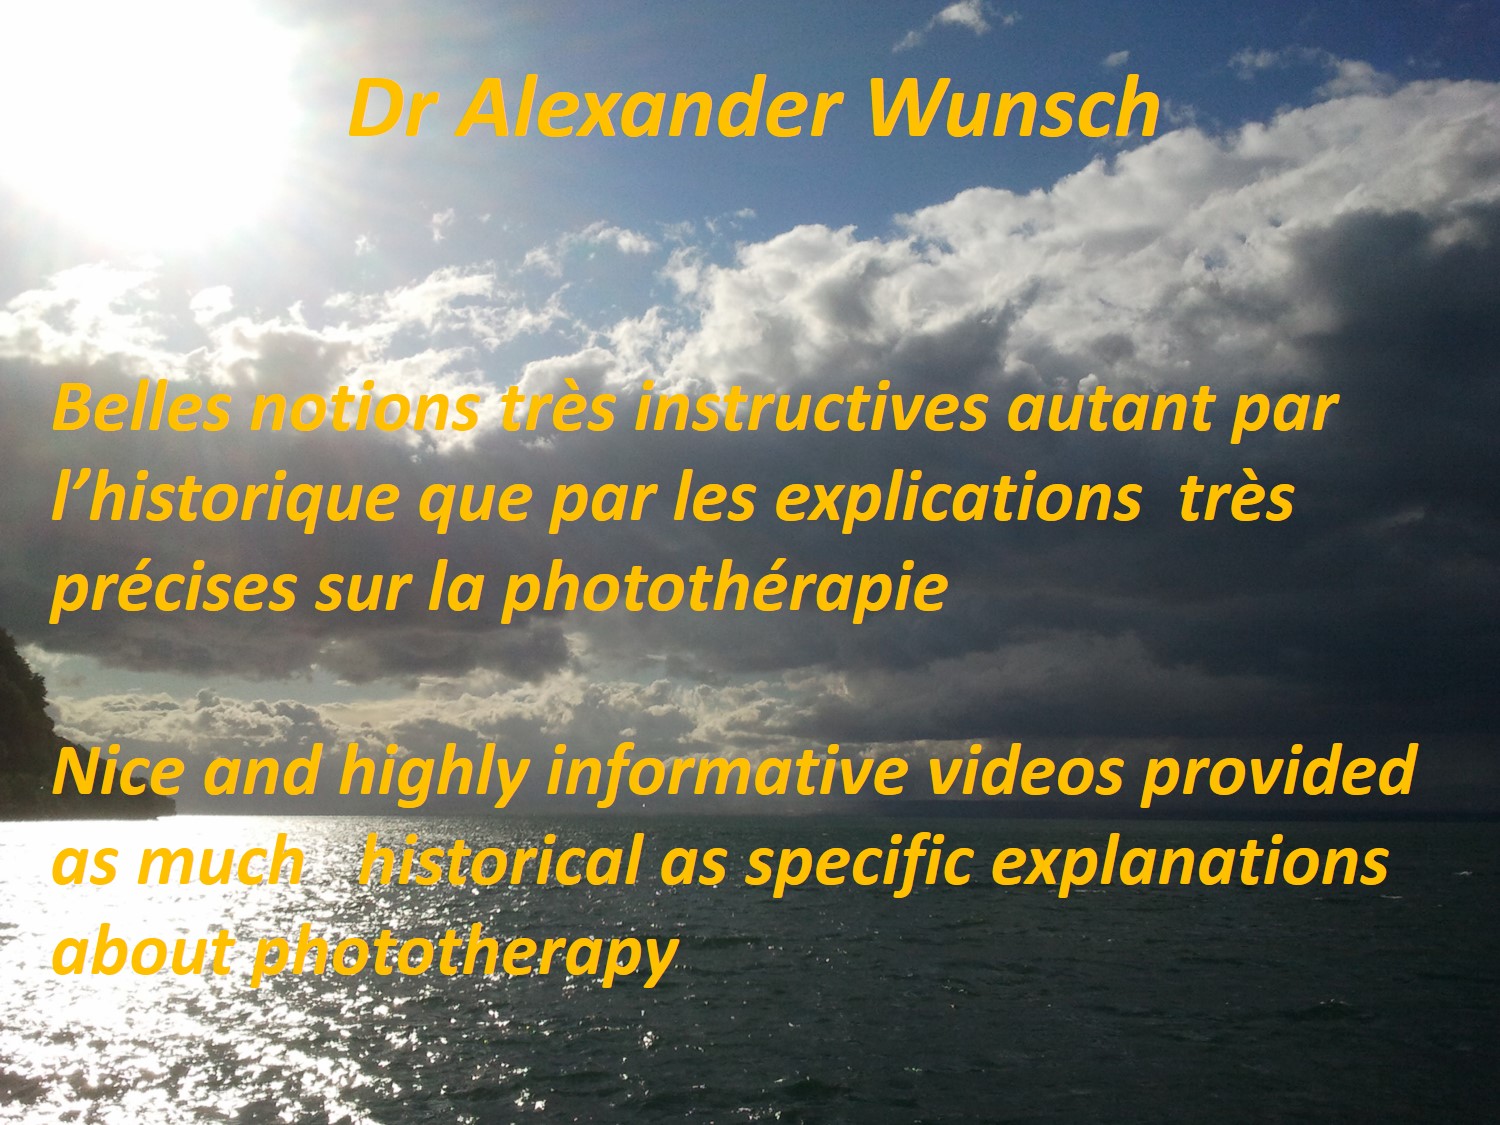 DR ALEX WUNSCH